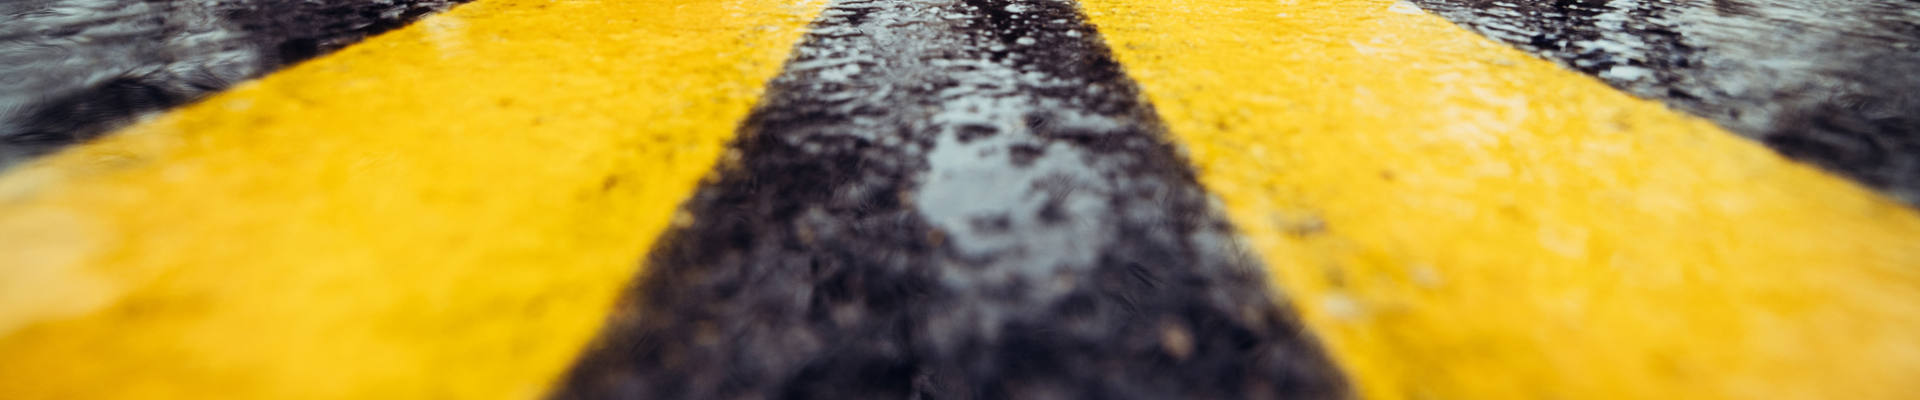 湿沥青上的黄色道路标记